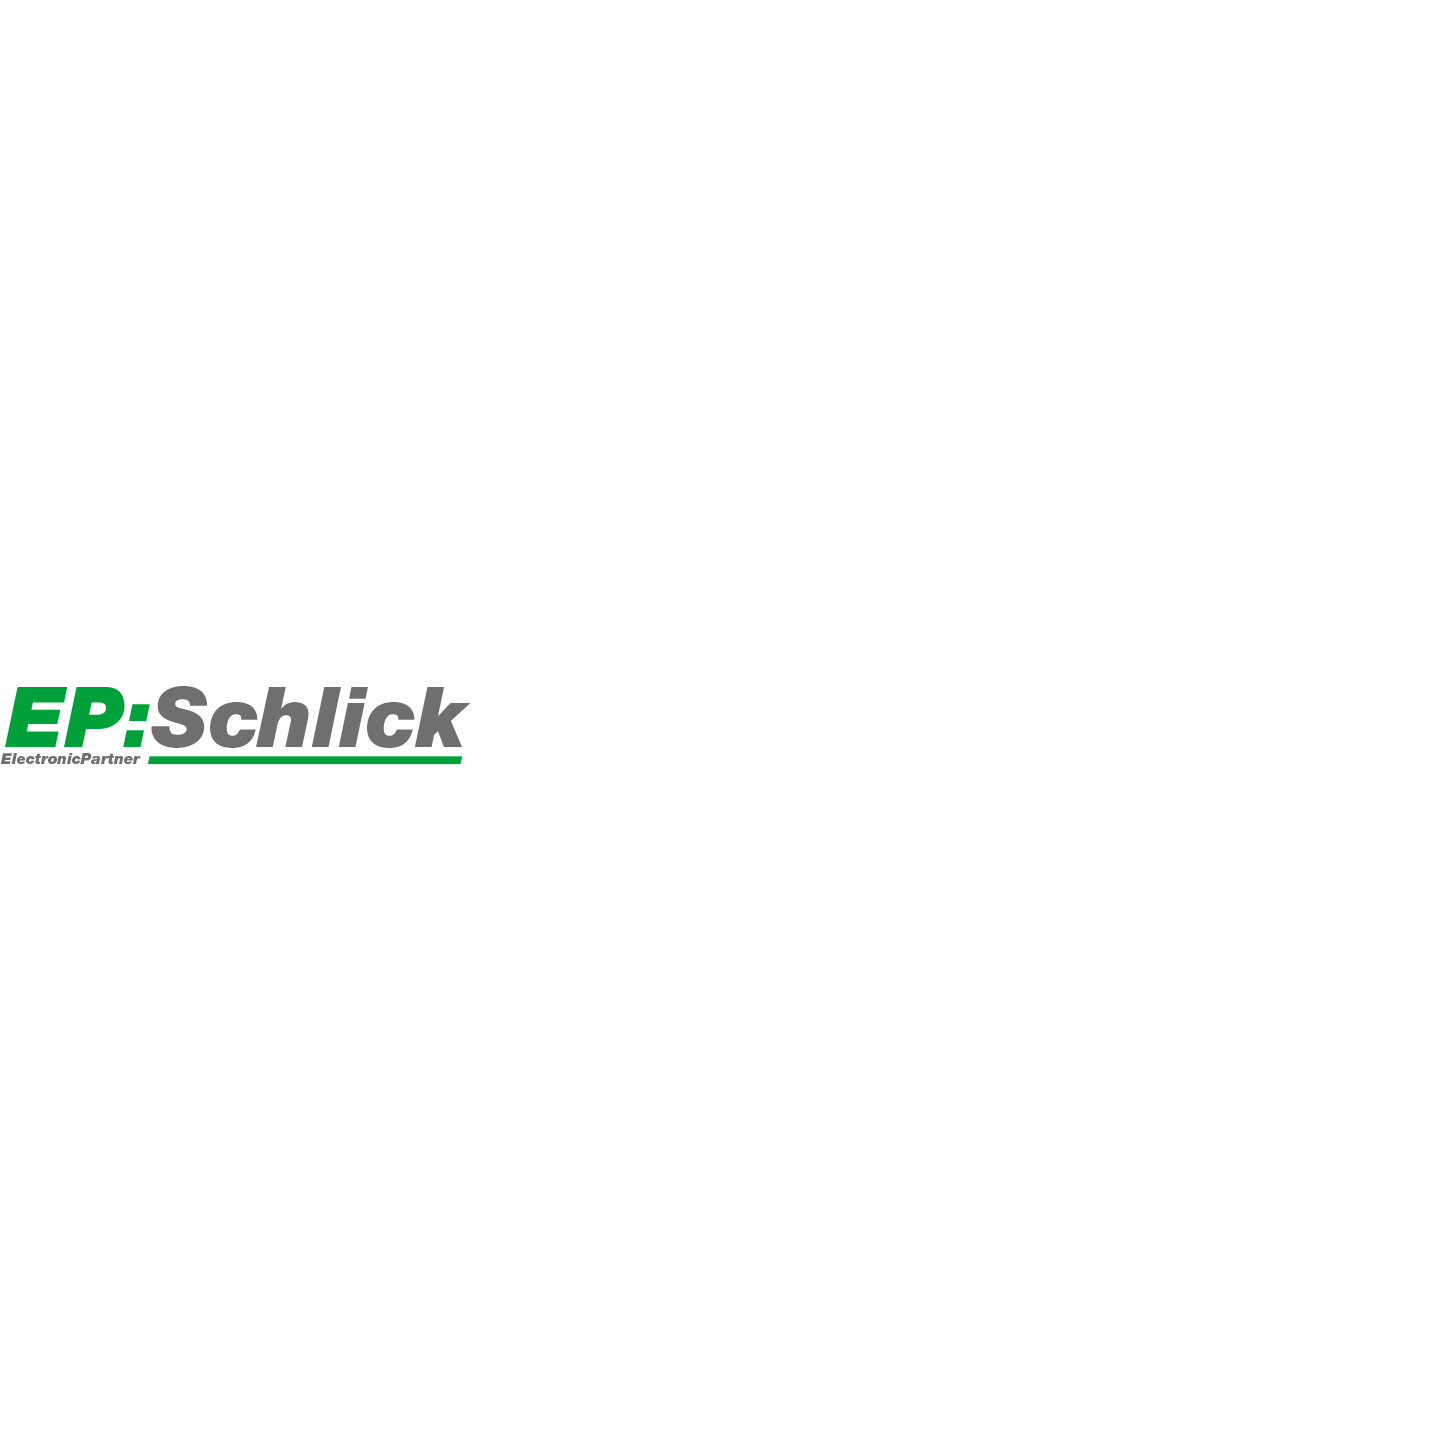 EP:Schlick Logo